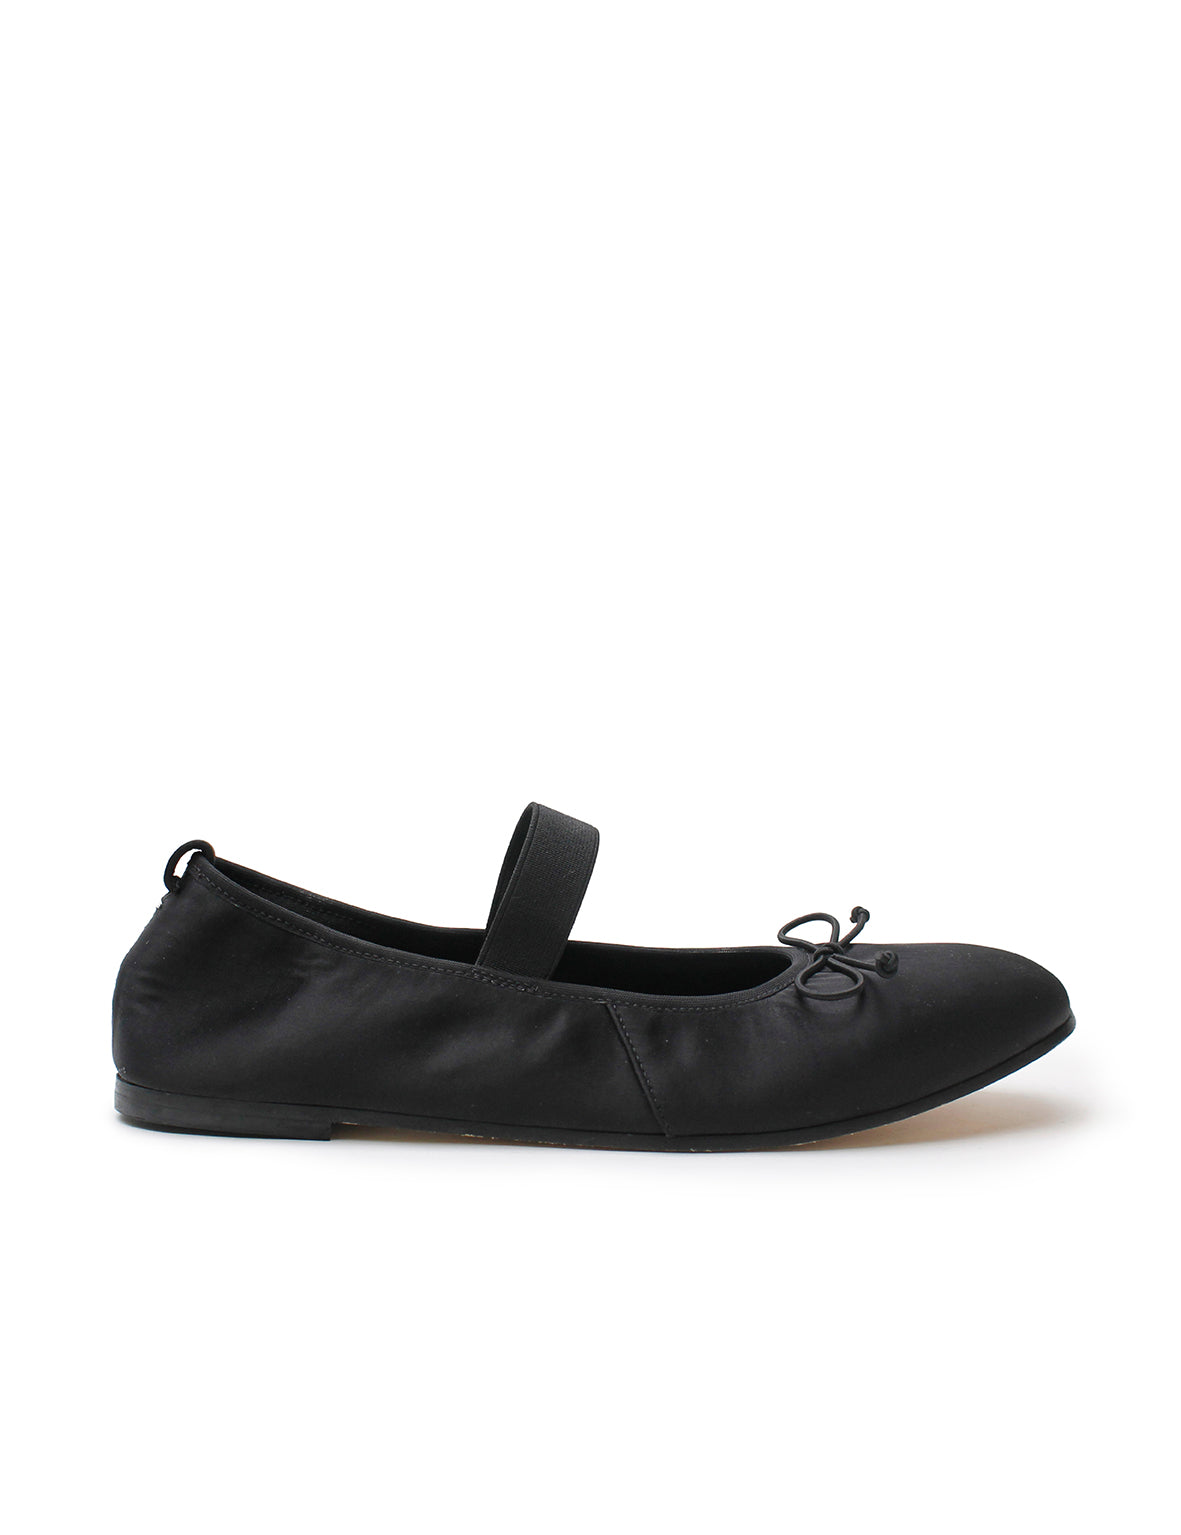 Ballet Flat - Black Satin